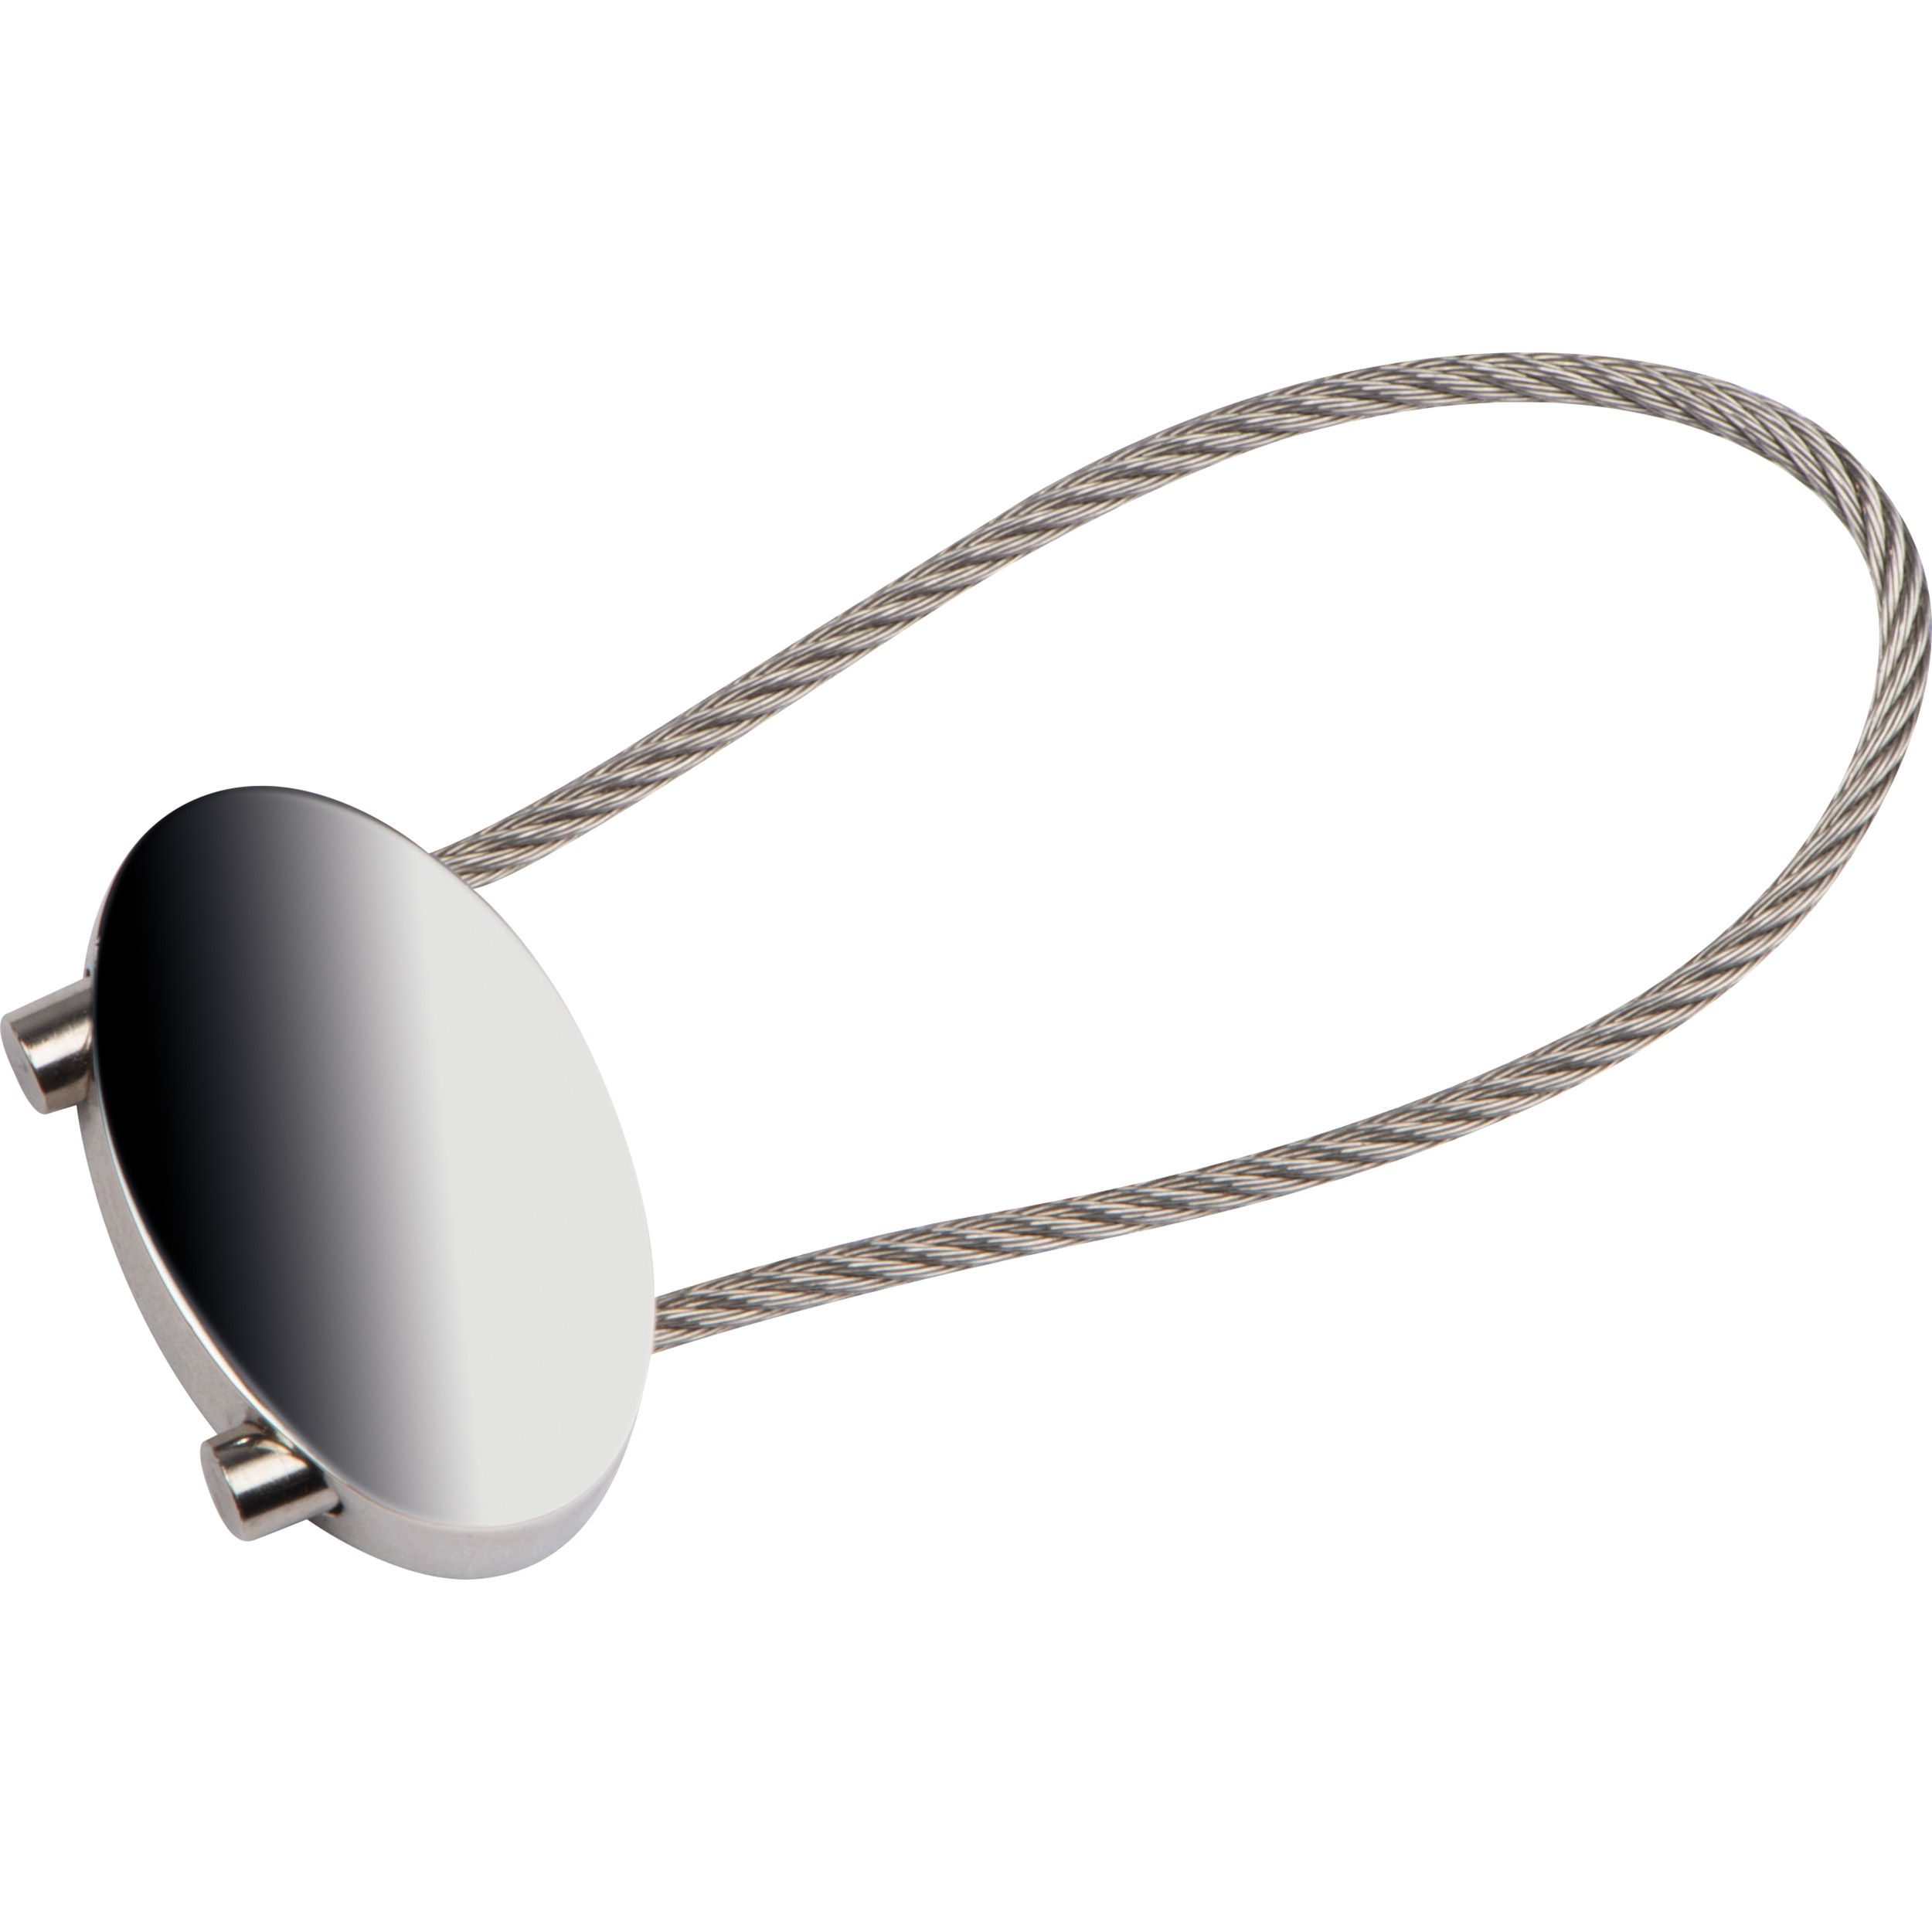 Ovales Schlüsselband mit Drahtschlaufe - Grinzens